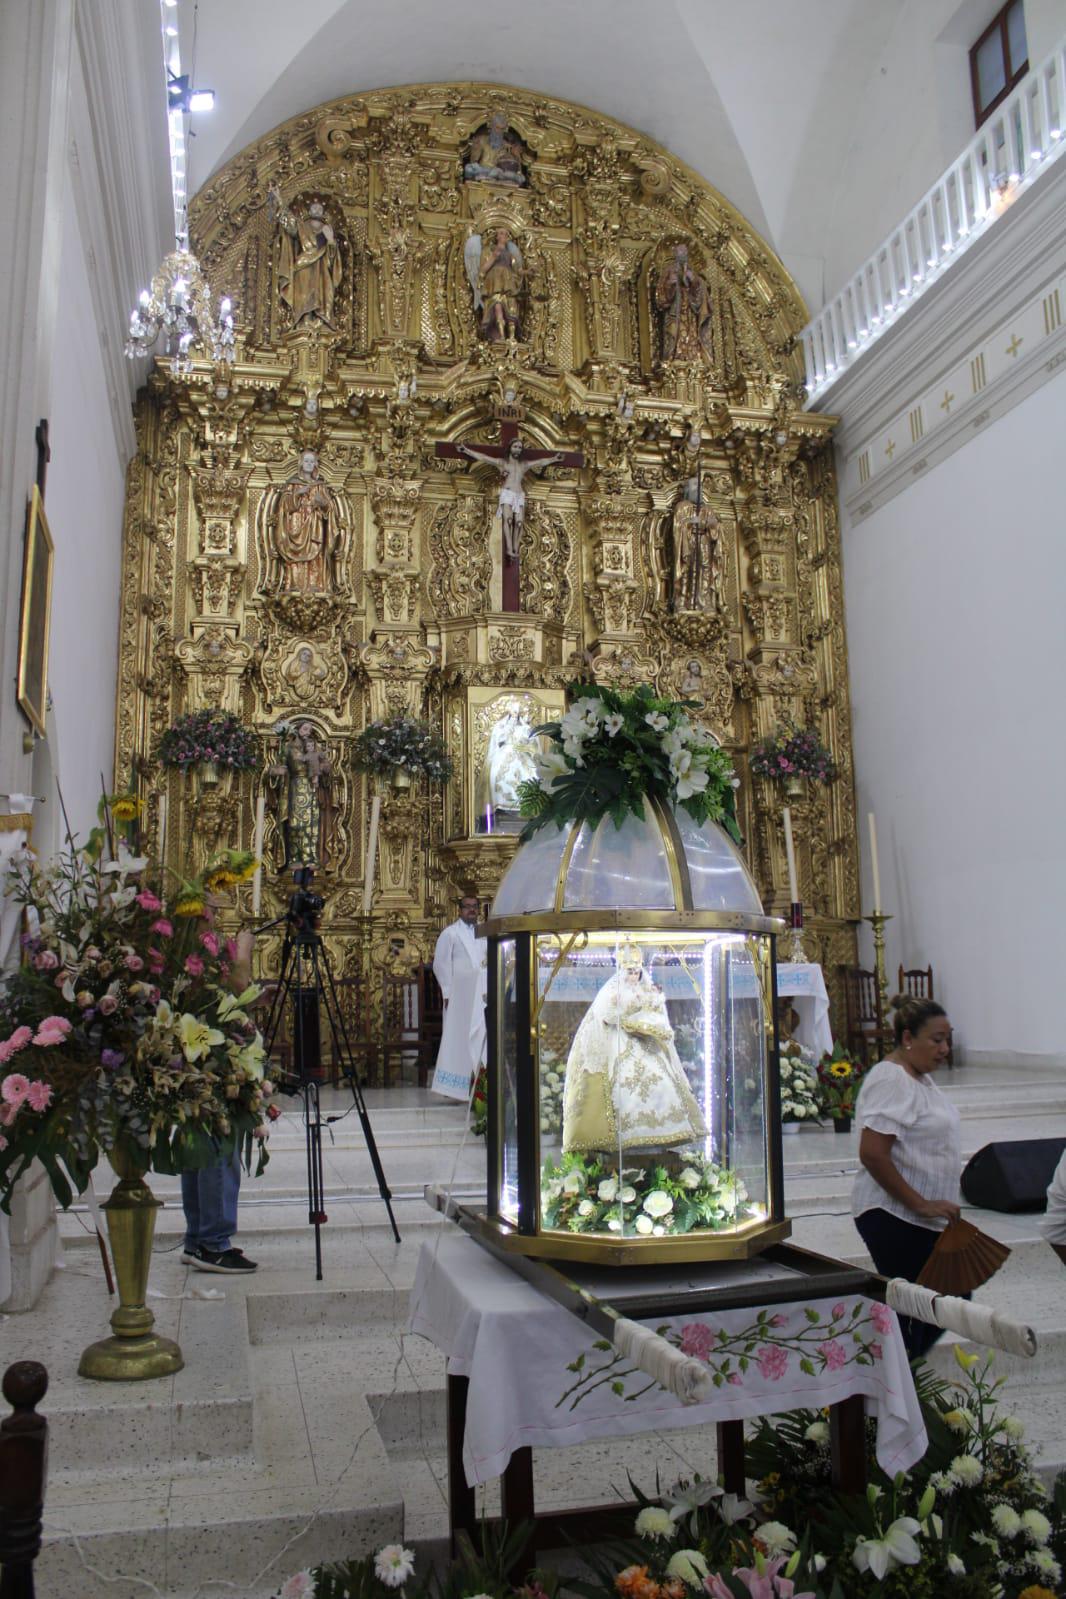 $!Celebran 62 años de la consagración del santuario de Nuestra Señora del Rosario